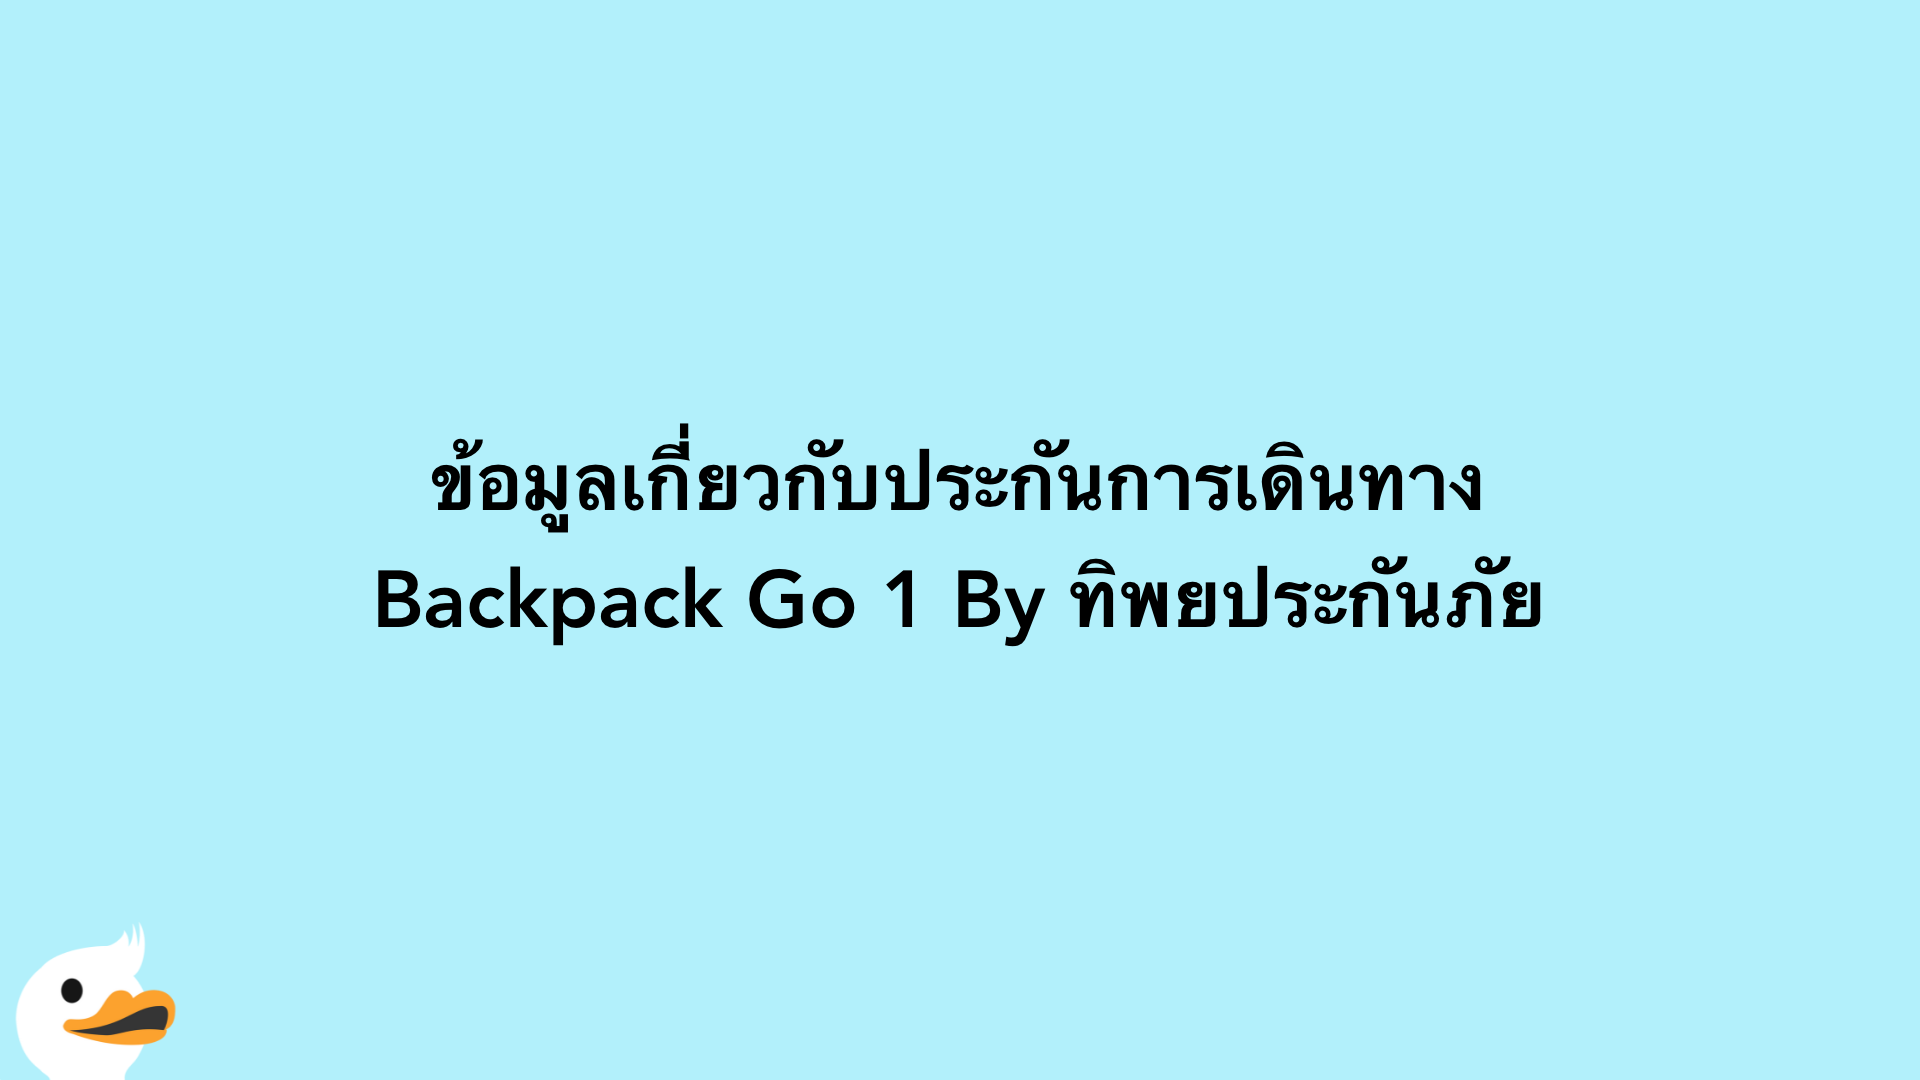 ข้อมูลเกี่ยวกับประกันการเดินทาง Backpack Go 1 By ทิพยประกันภัย